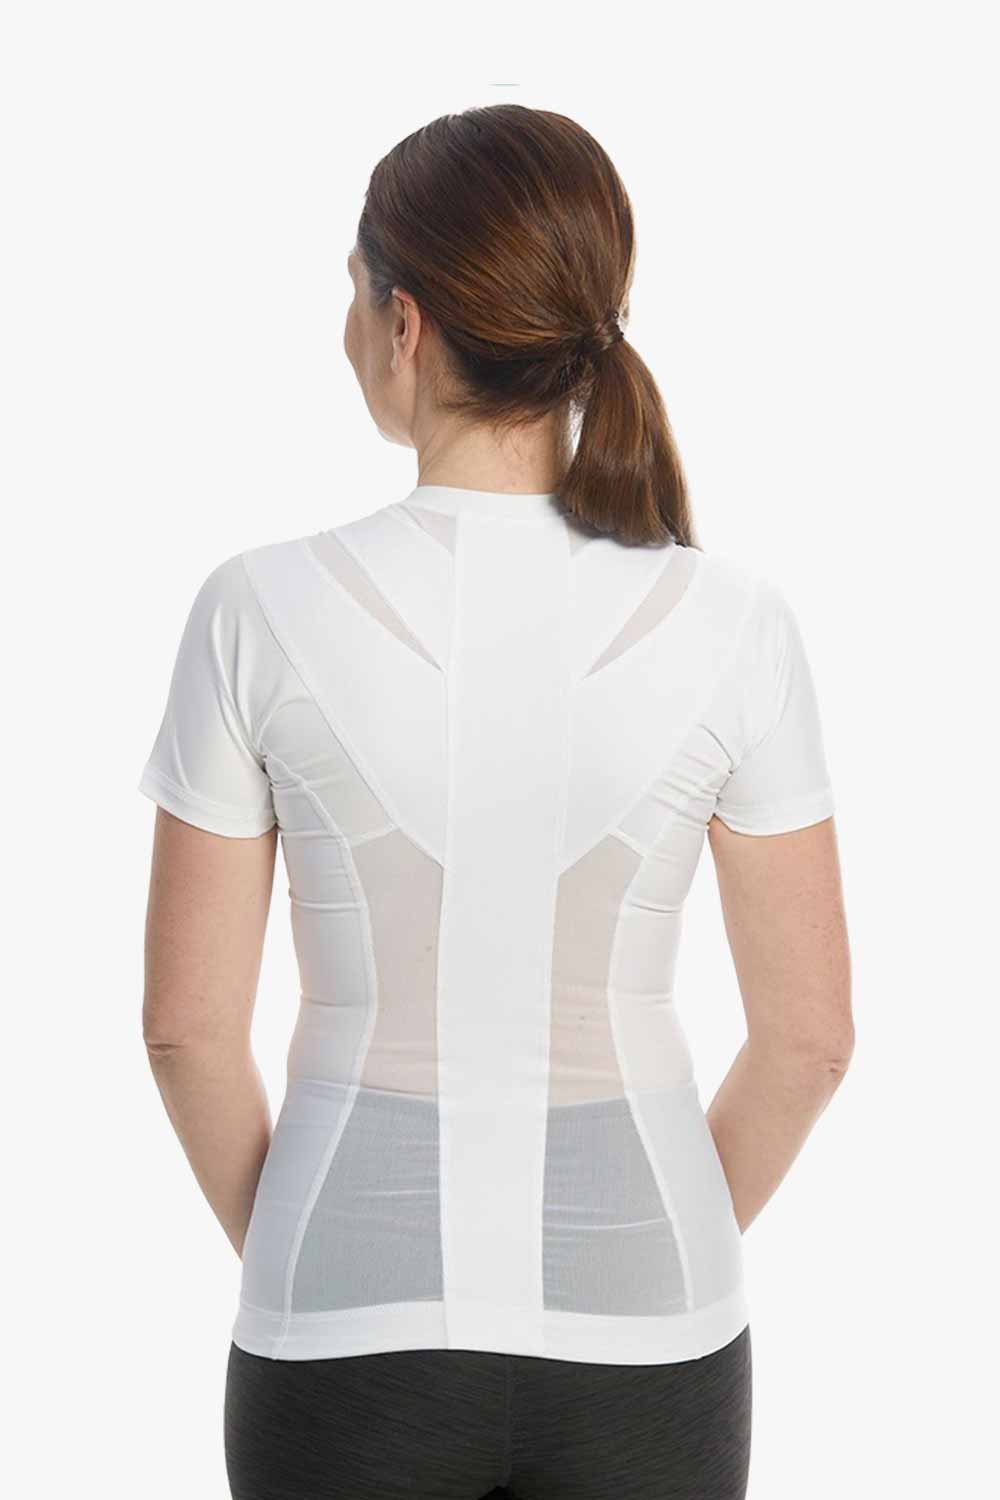 Posture Shirt® For Women - Zipper